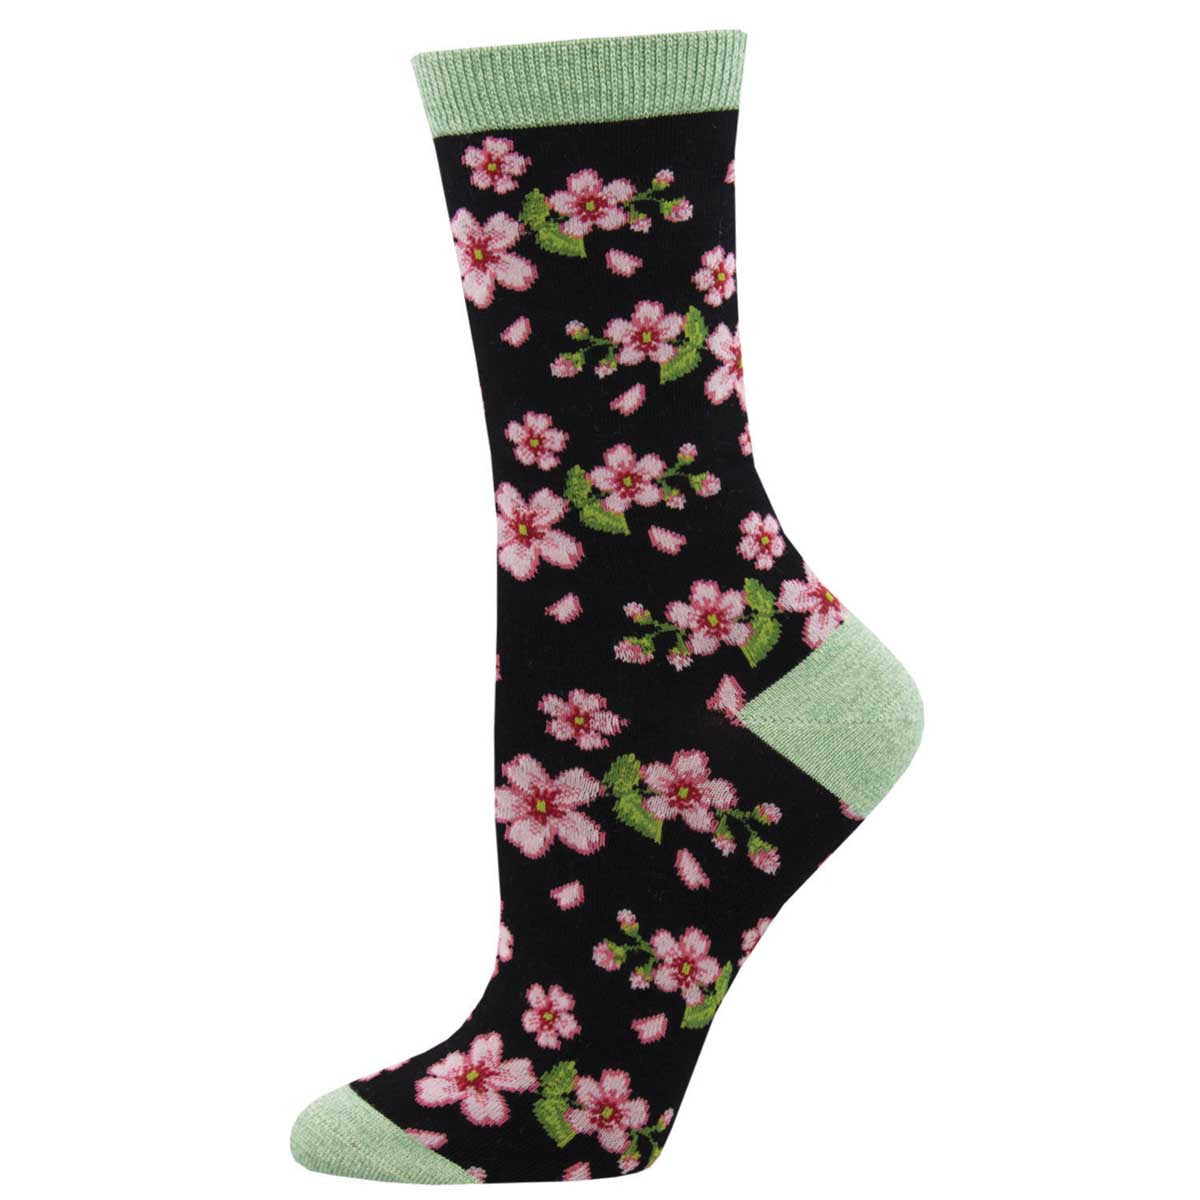 In Bloom Women's Socks